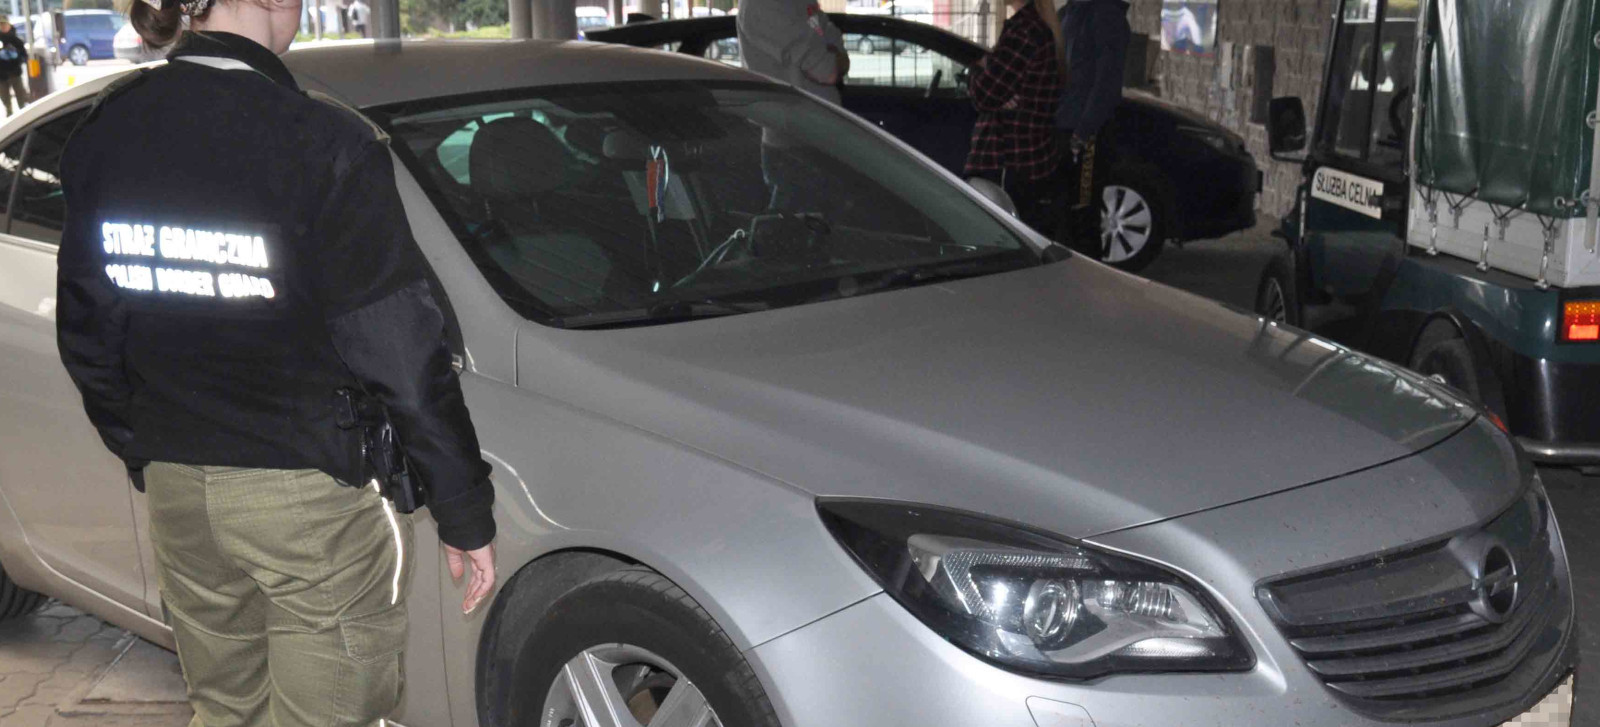 PODKARPACIE: Honda i Opel odzyskane na granicy w Korczowej